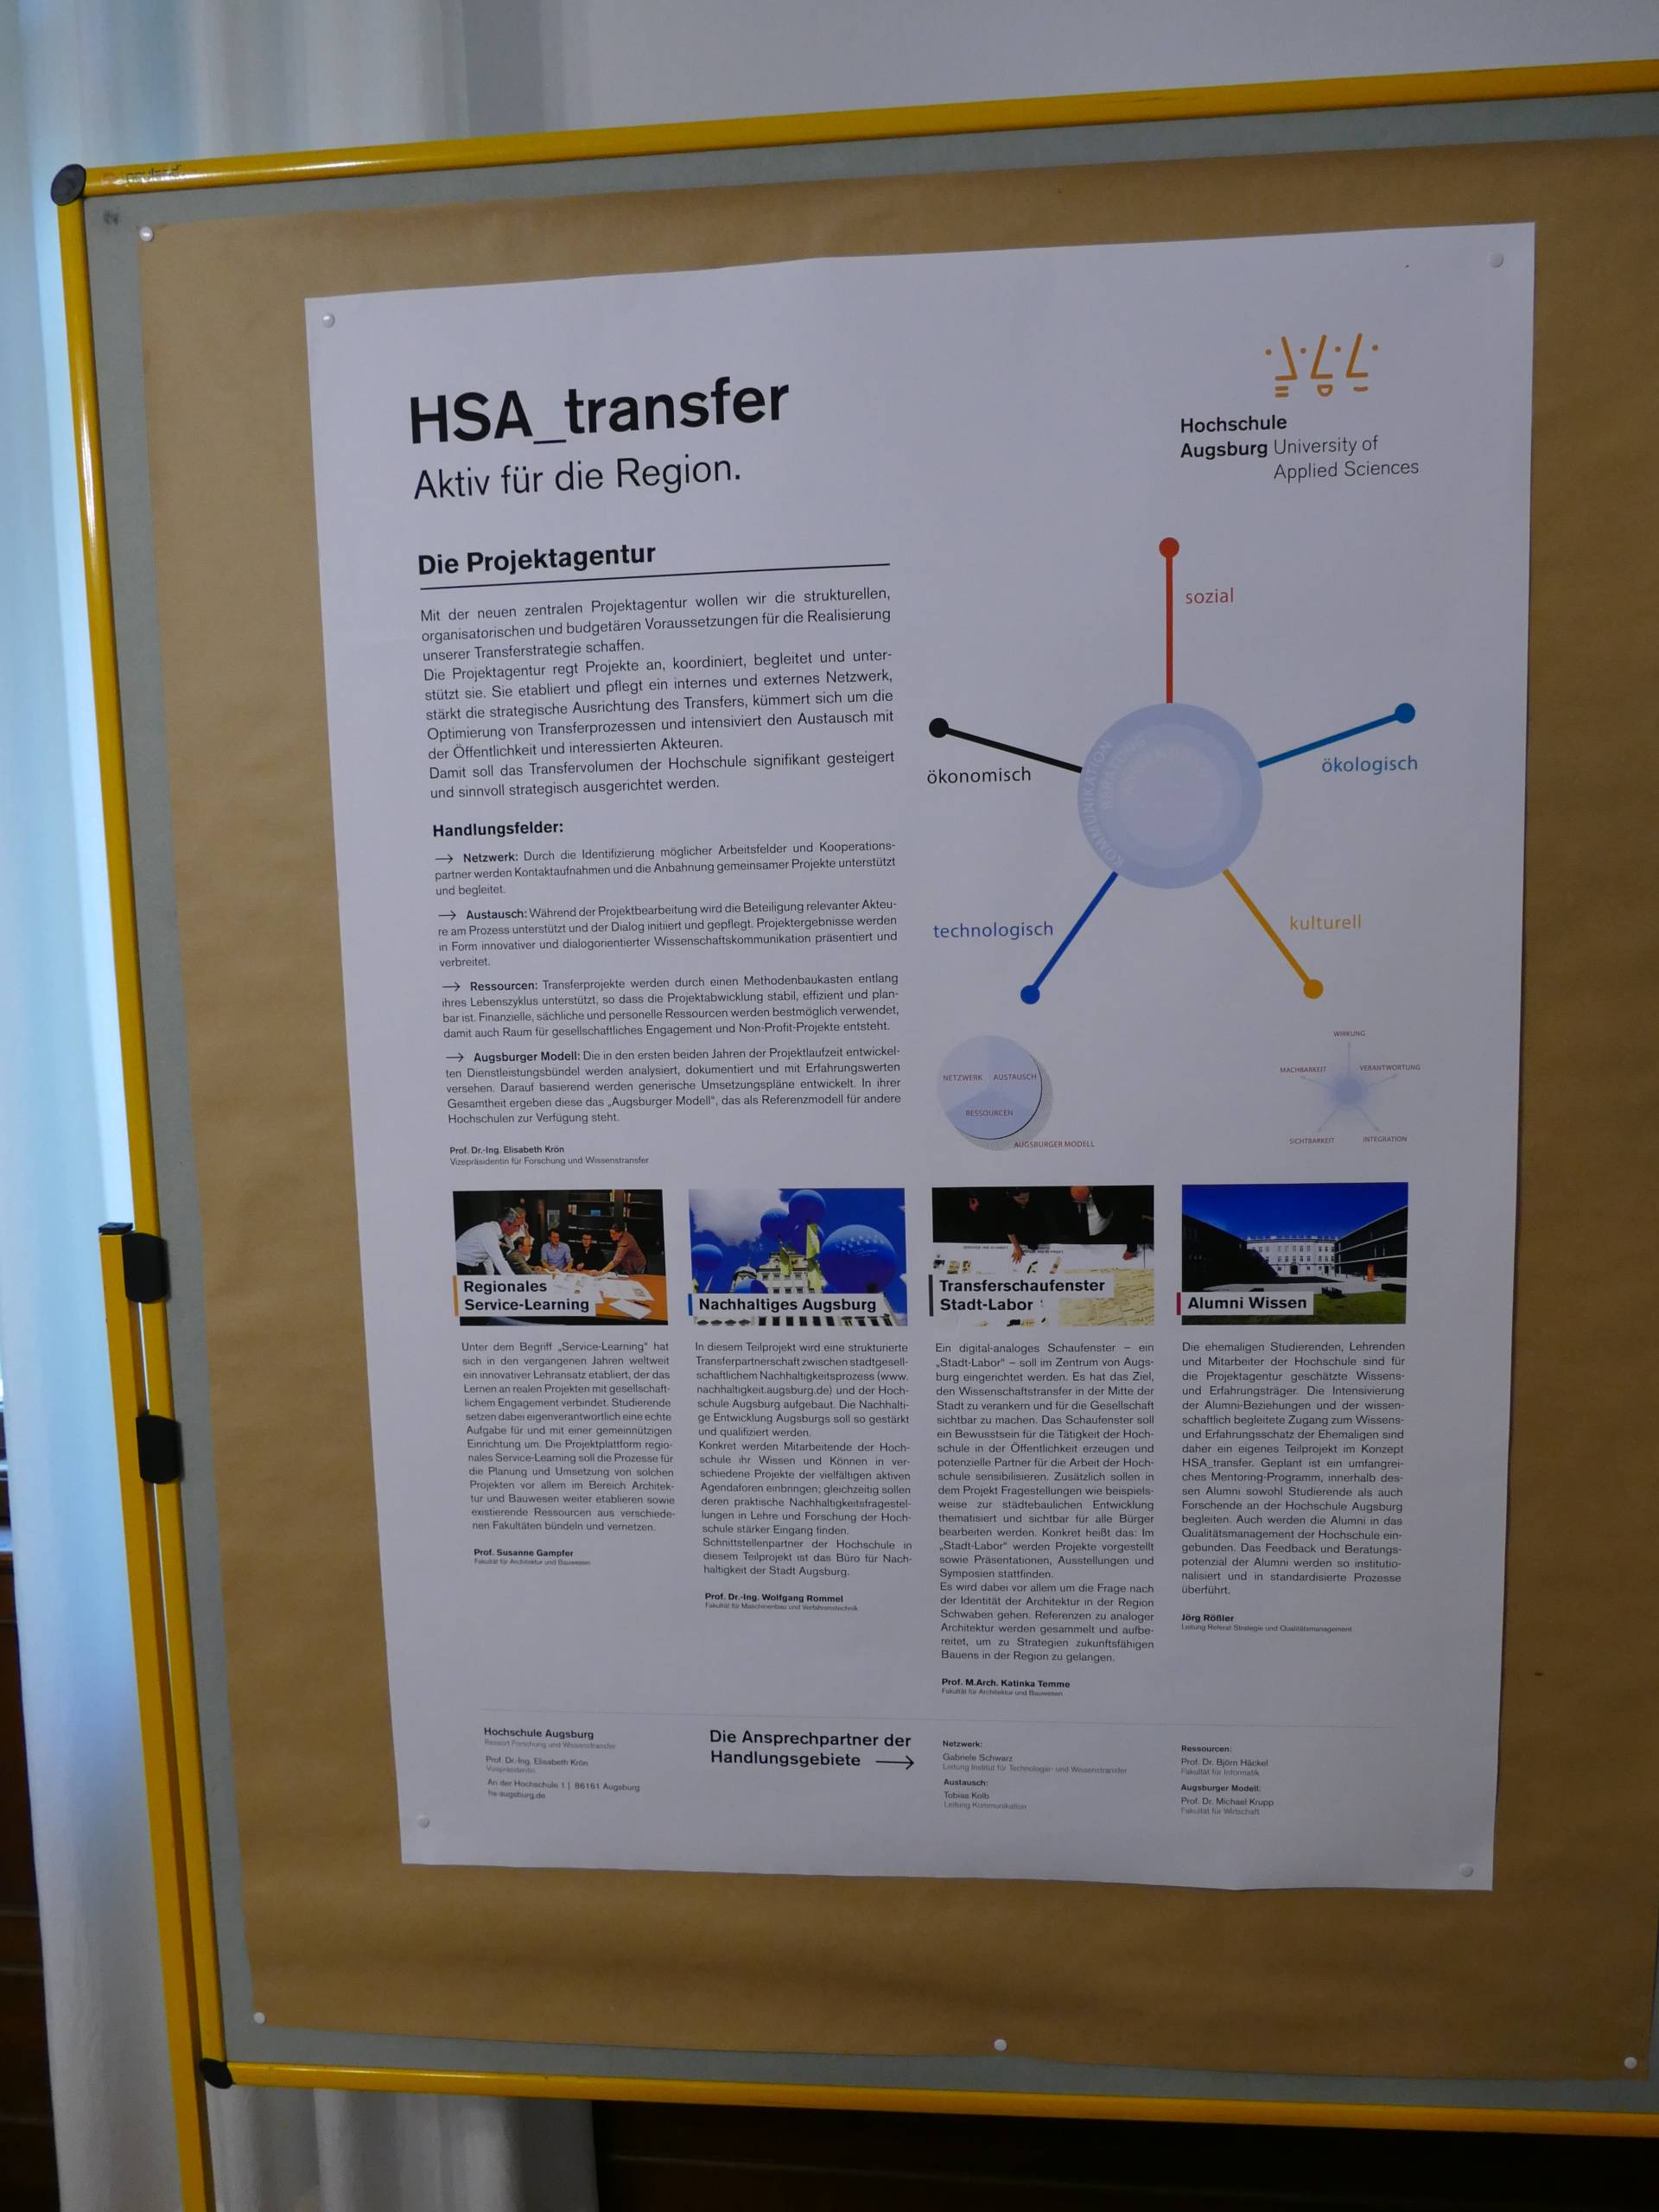 HSA_transfer: Agentur für kooperative Hochschulprojekte - Für gesellschaftliche Zukunftsthemen der Region